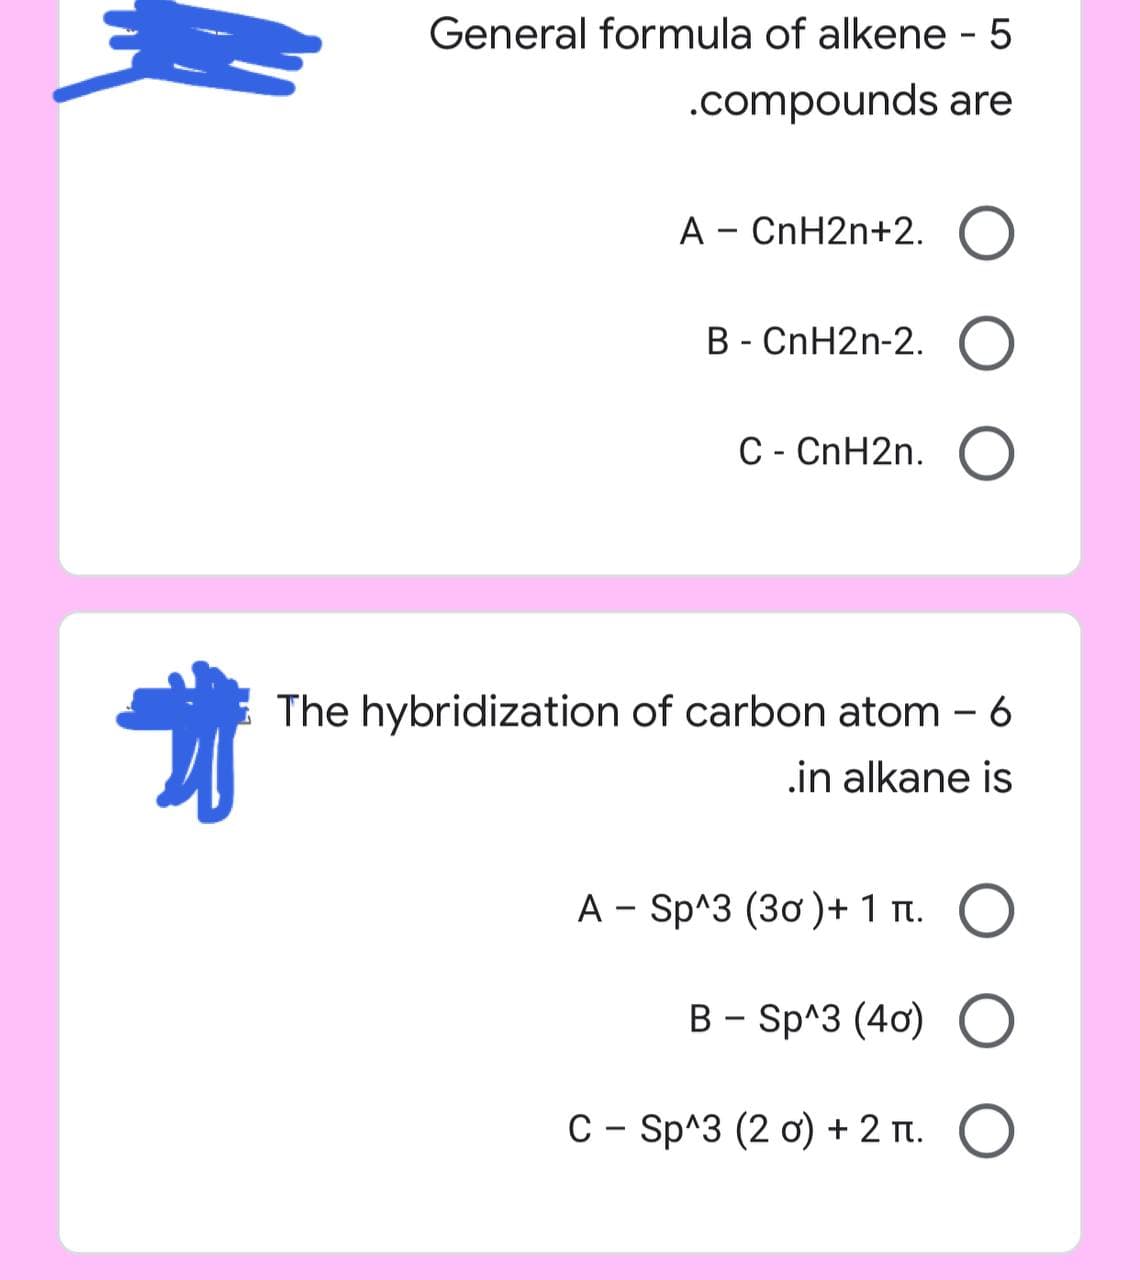 地
General formula of alkene - 5
.compounds are
A - CnH2n+2. O
B - CnH2n-2. O
C - CnH2n. O
The hybridization of carbon atom - 6
in alkane is
- O
A Sp^3 (30) + 1 n.
B-Sp^3 (40) O
С - Sp^3 (20) + 2 . O